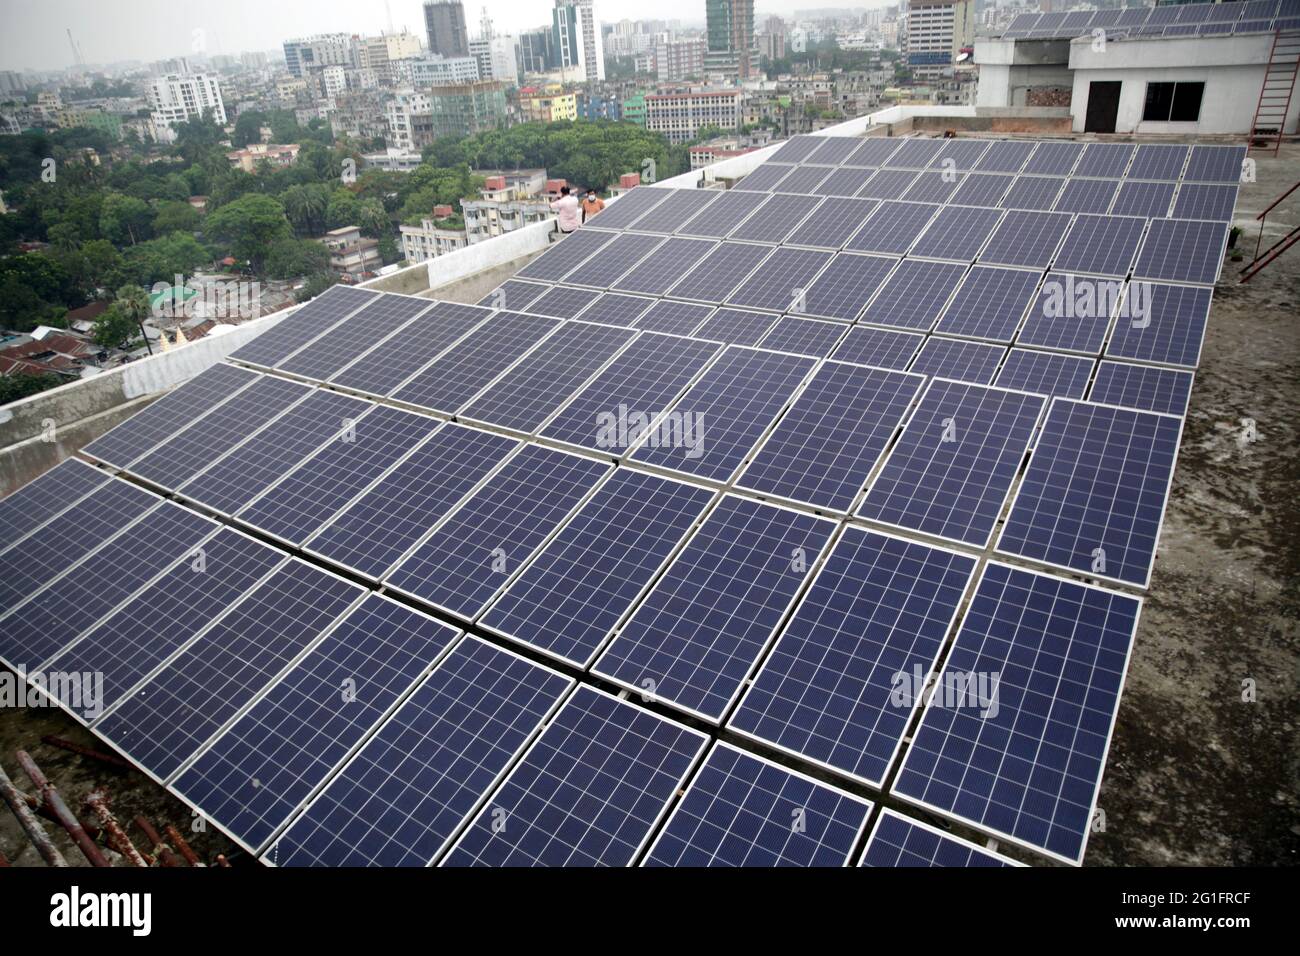 Jun 07 2021.Dhaka, bangladesch,Solarenergie trägt mehr neuen Strom ins Netz als jede andere Form von Energie – eine Leistung, die mehr von der eu angetrieben wird Stockfoto